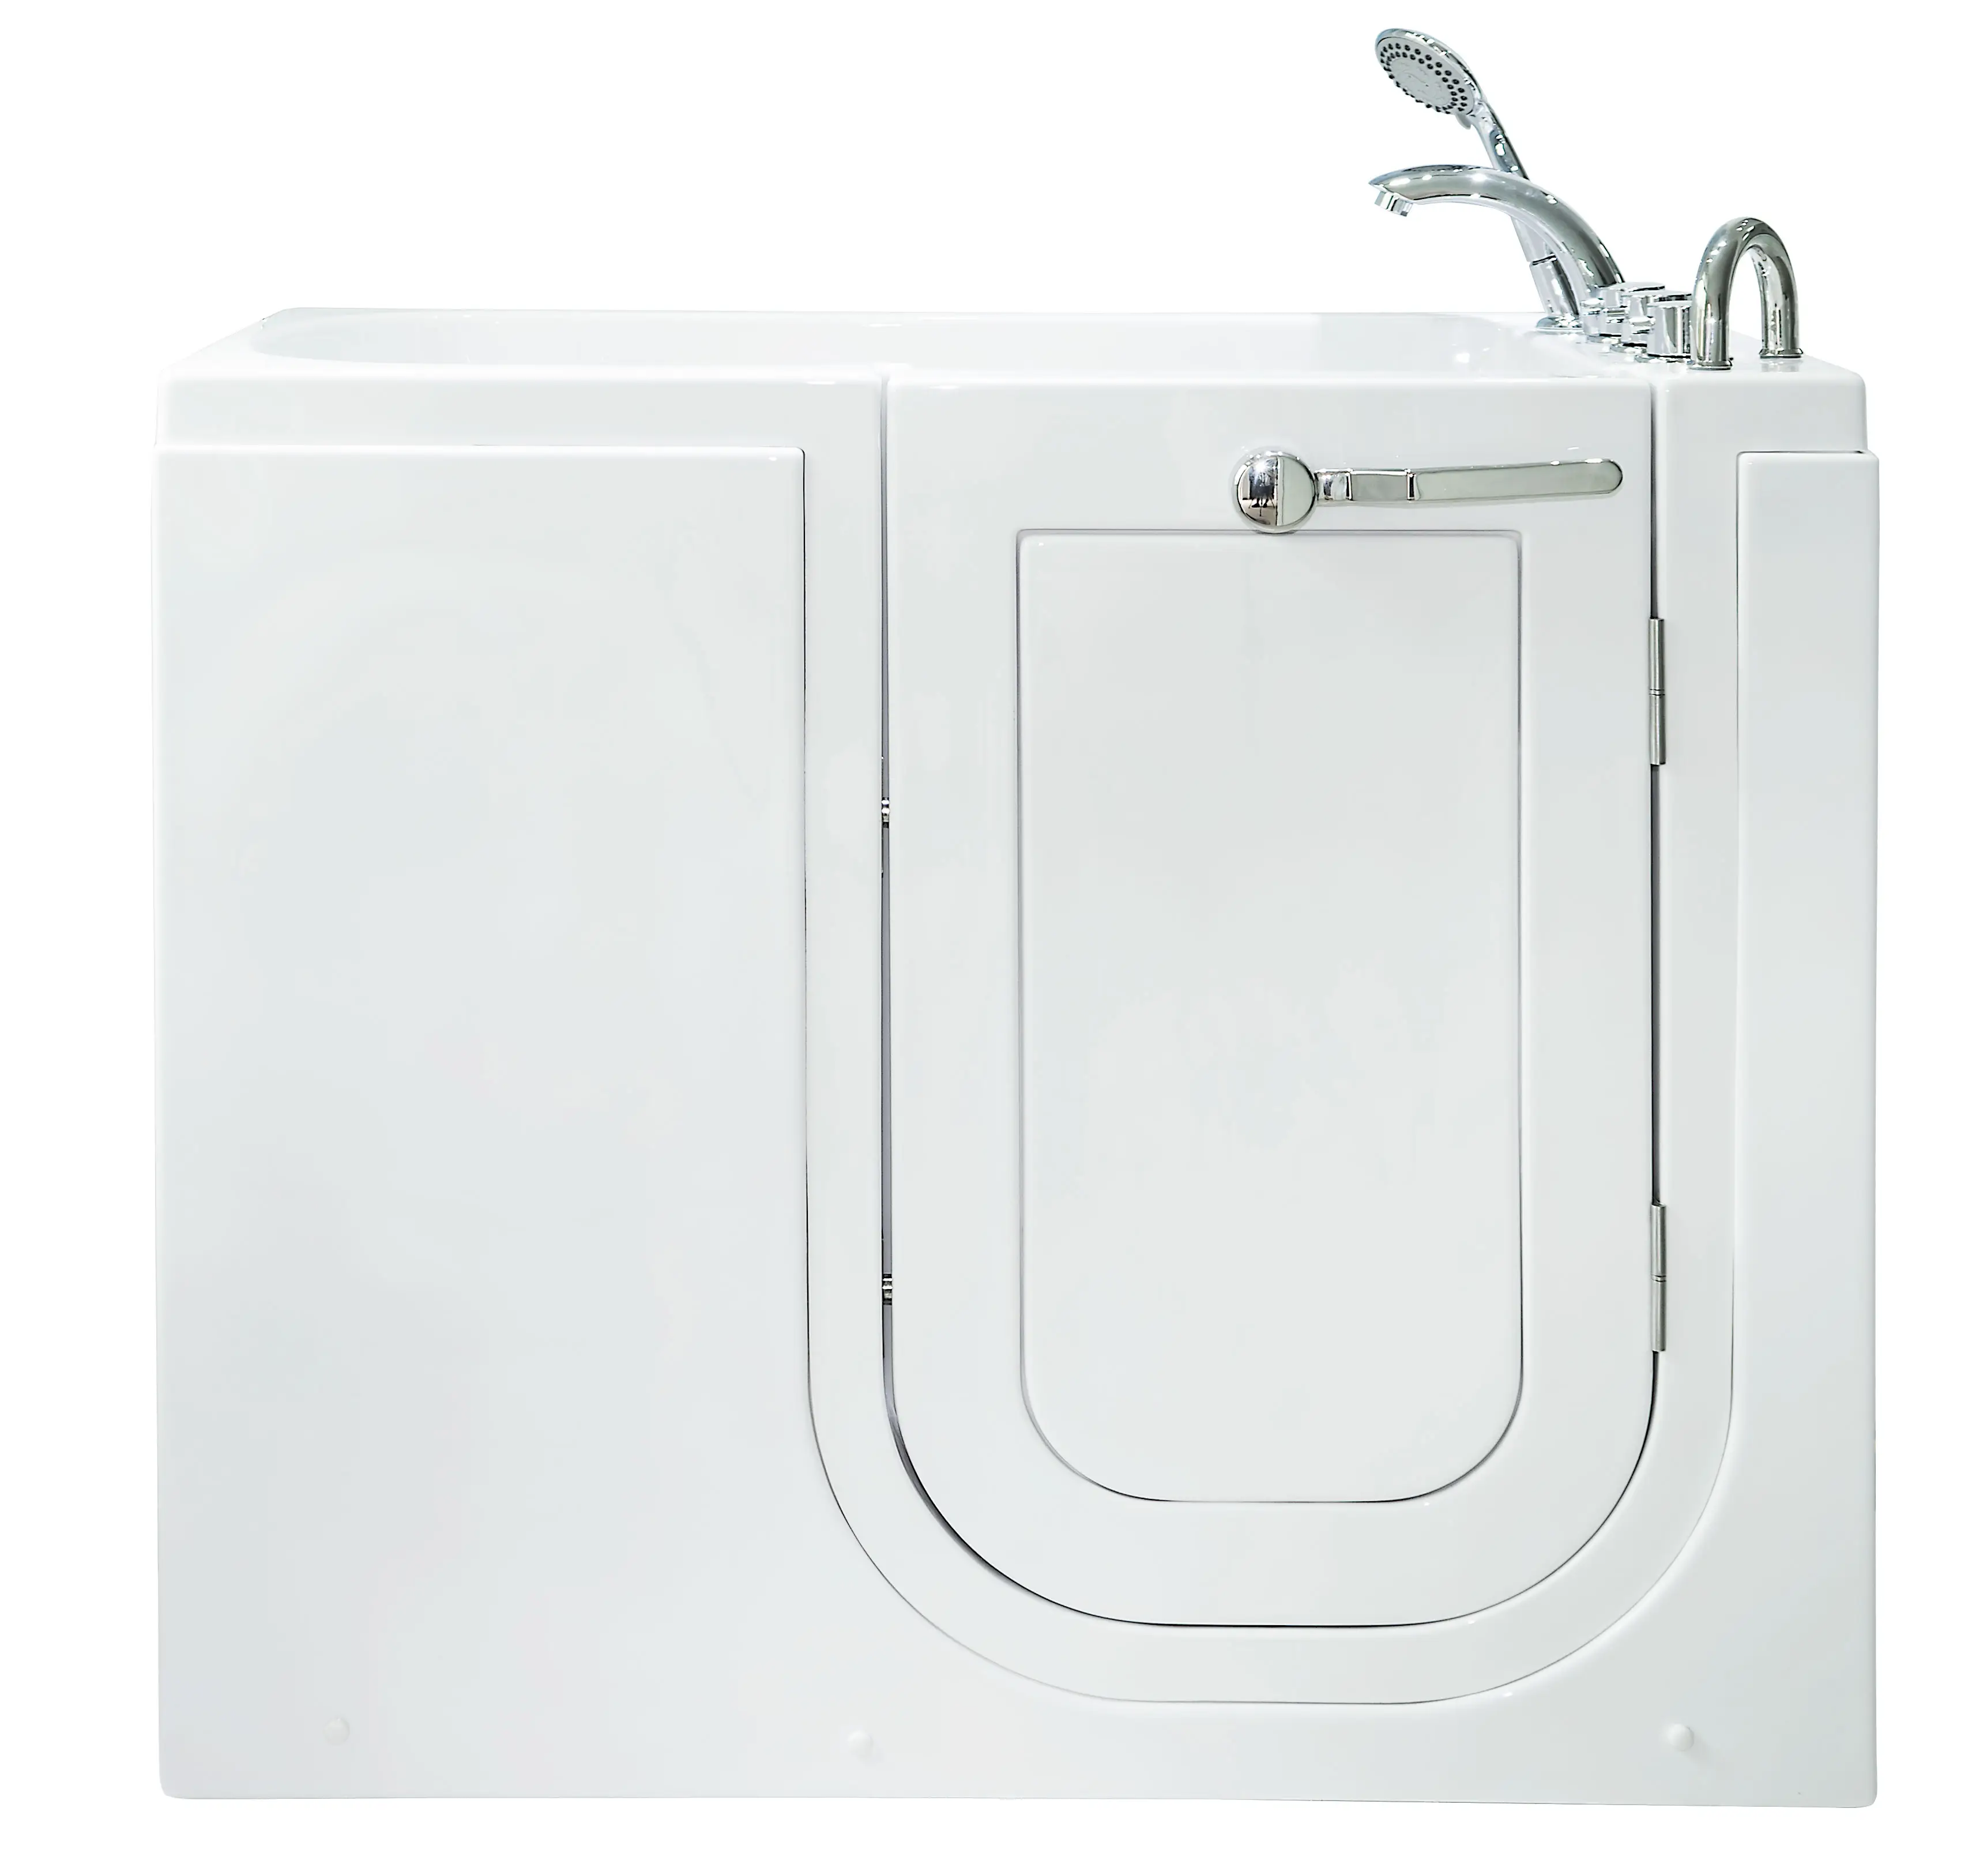 CUPC certificada ADA compliant projetado ergonomicamente compacto tamanho swing porta walk-in banheira banheira de segurança Z1160